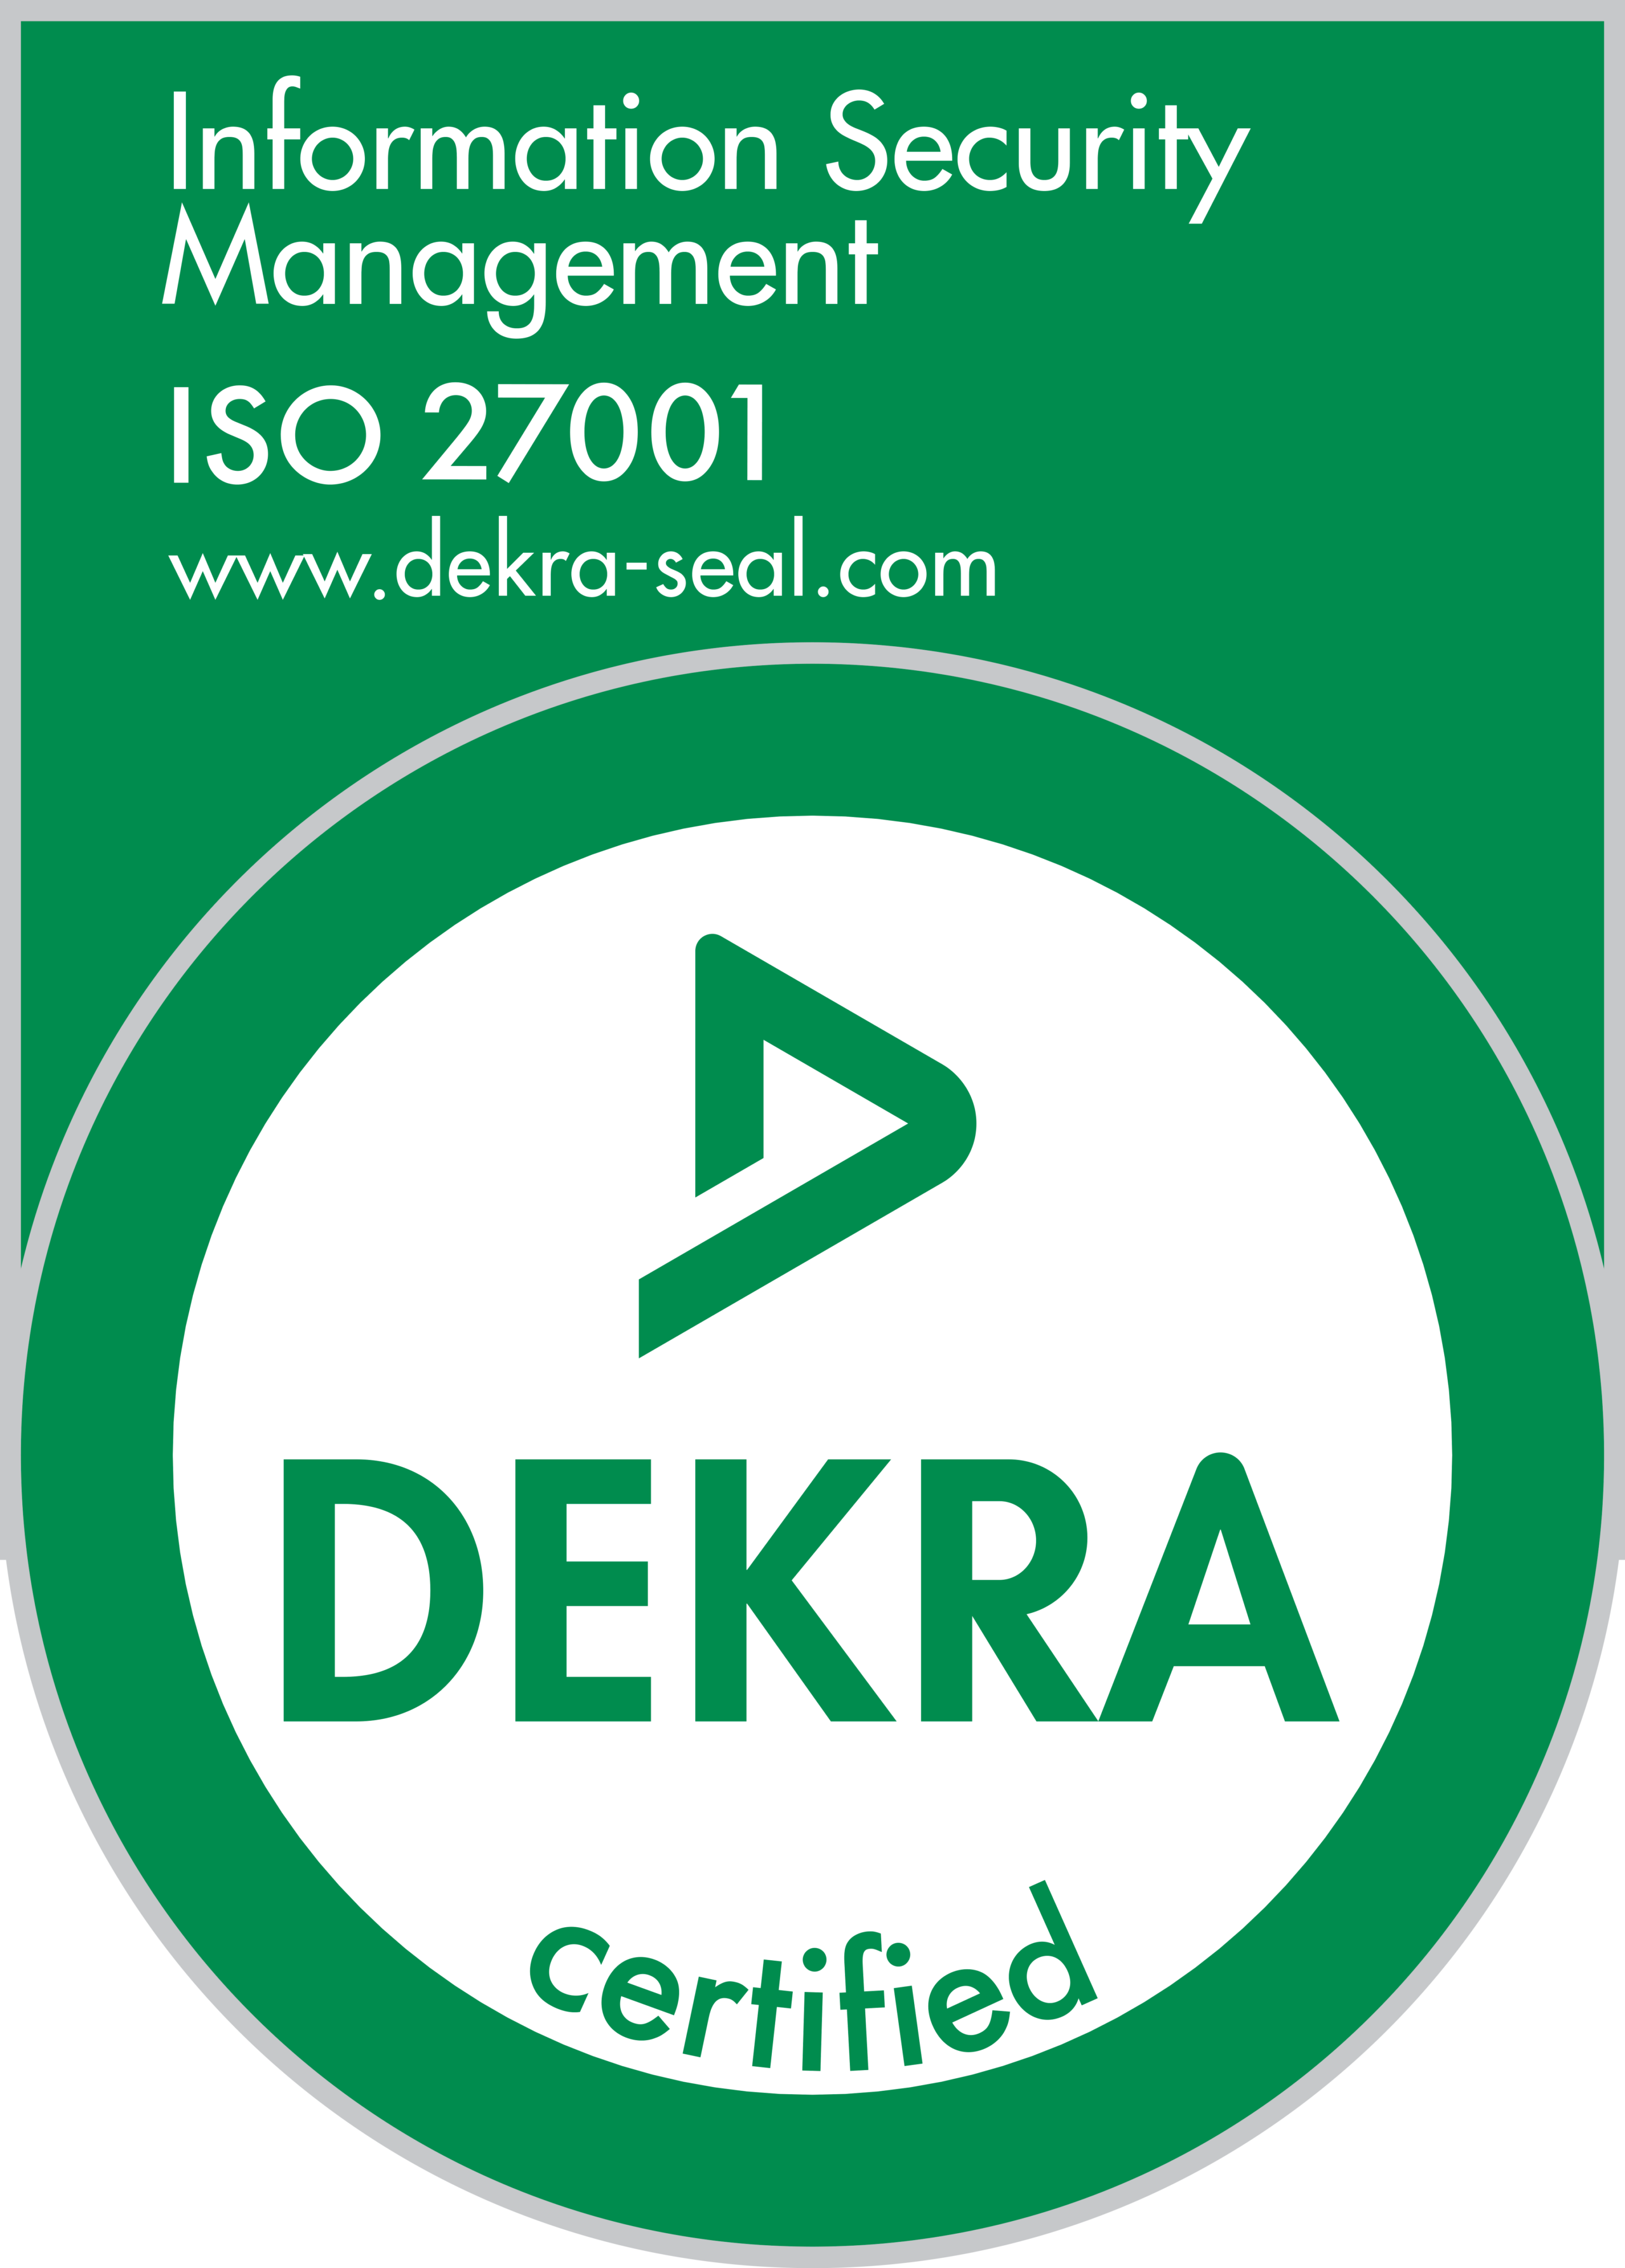 Dekra-ISO27001-greenseal - Trust Center